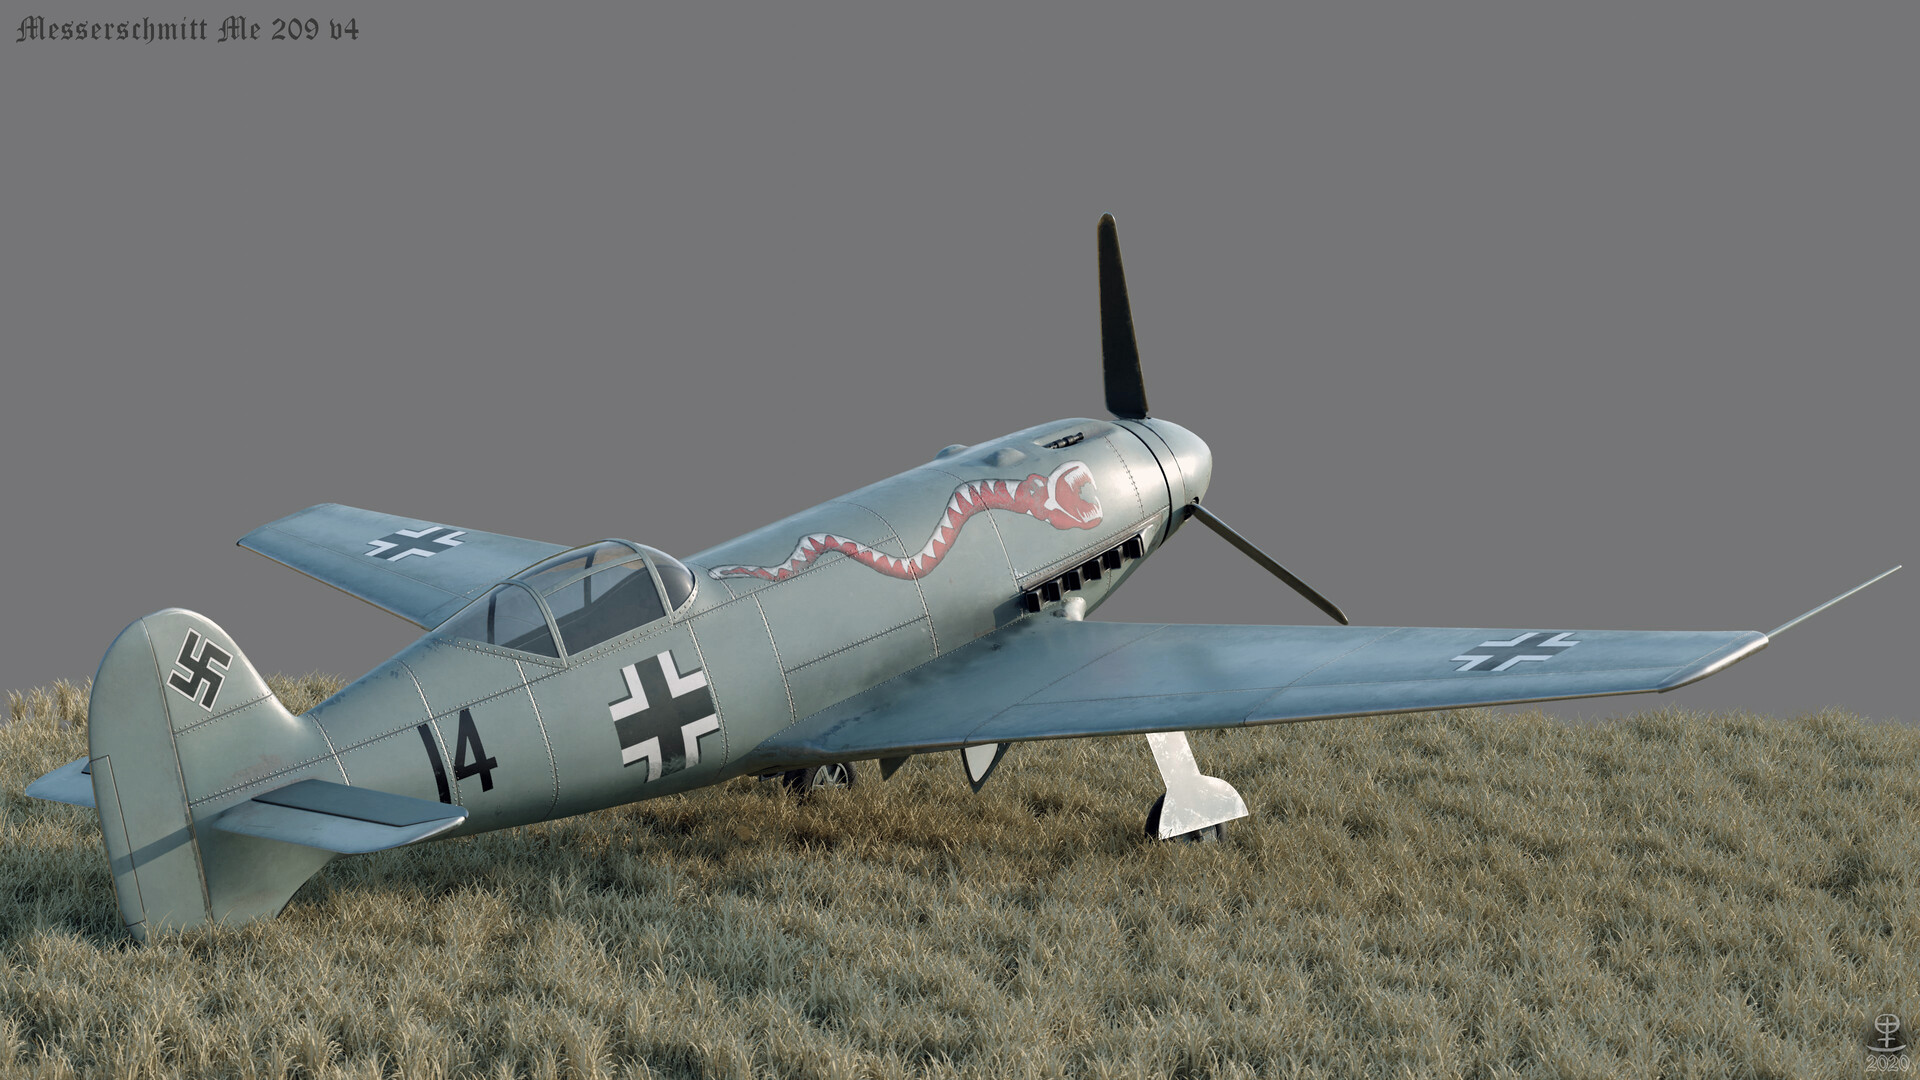 Messerschmitt Me 209 Wallpapers